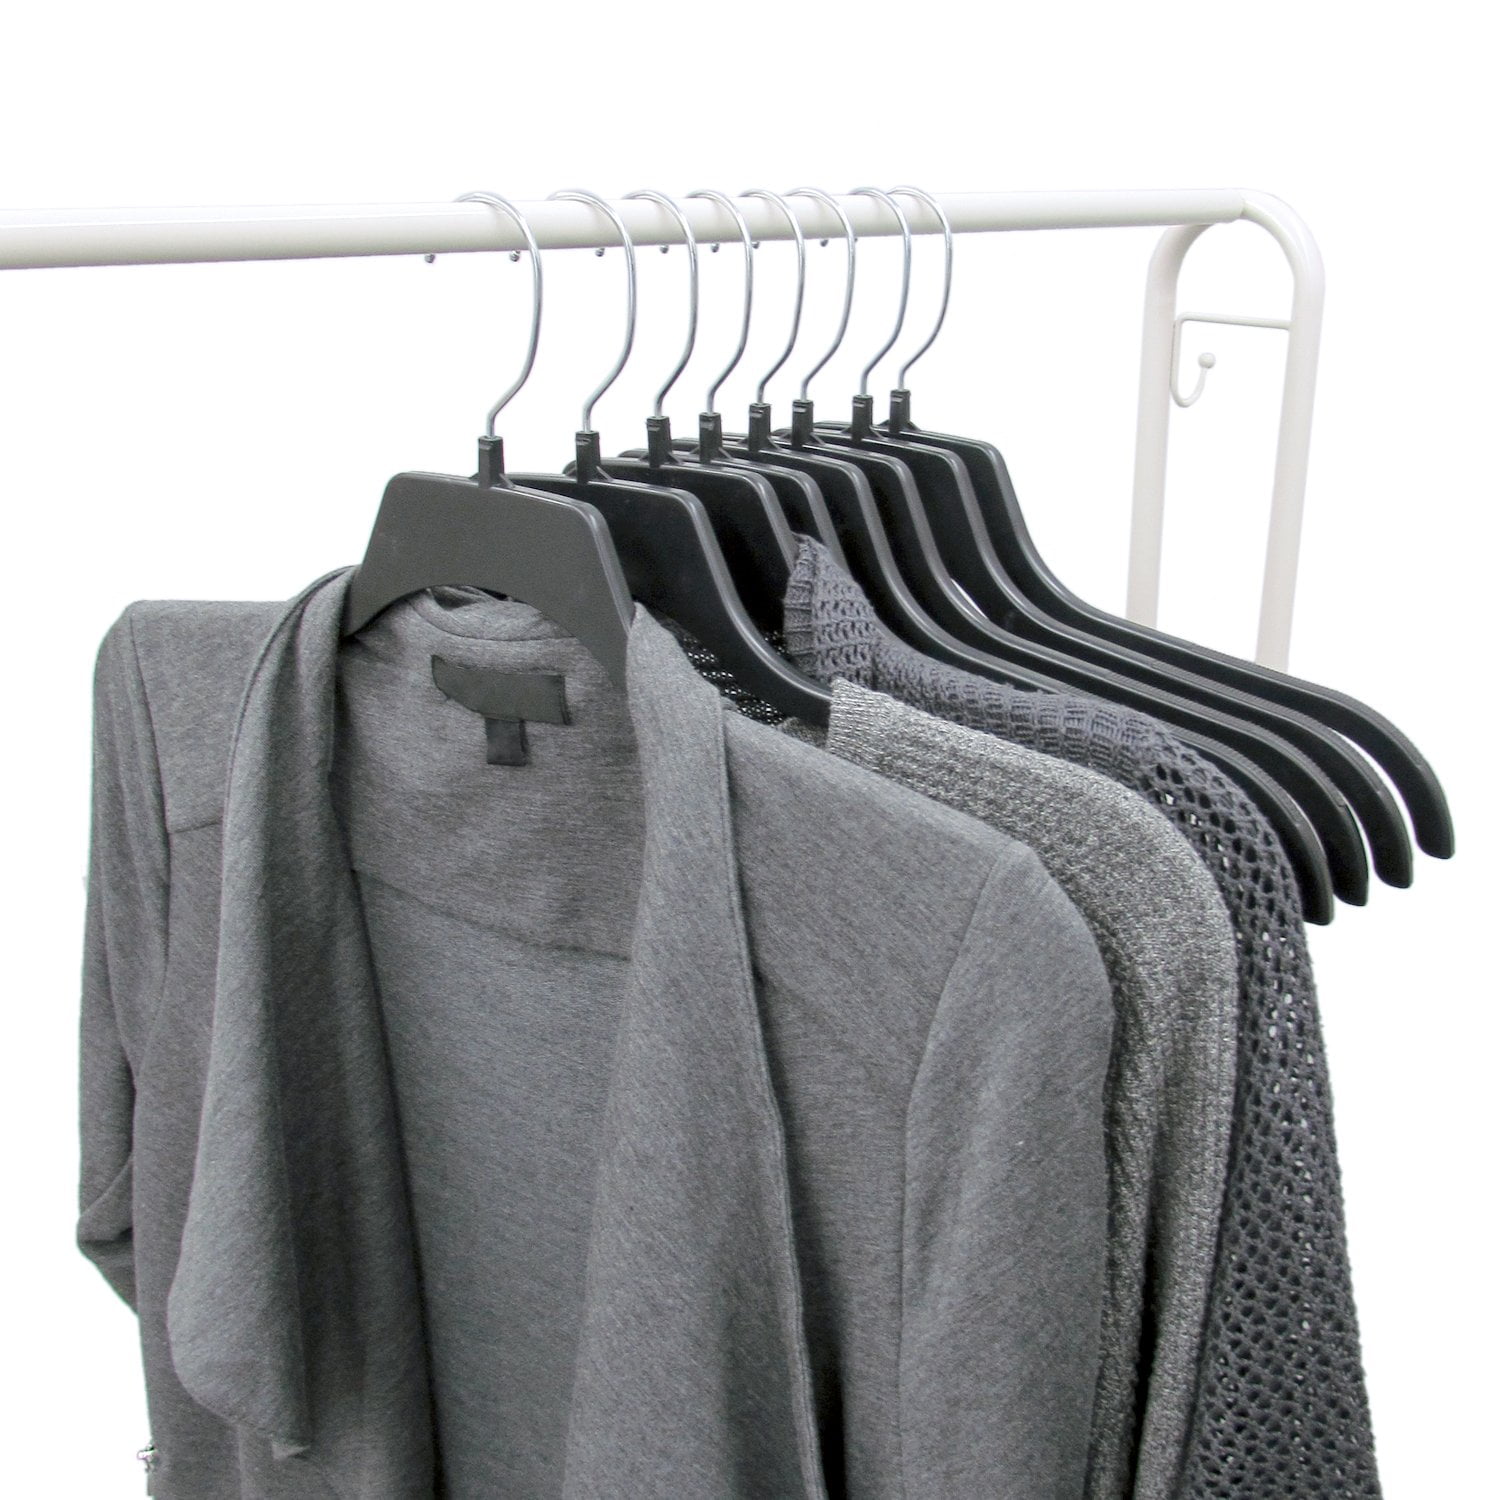 Merrick Plastic Clothing Hanger, 100 Pack, Black